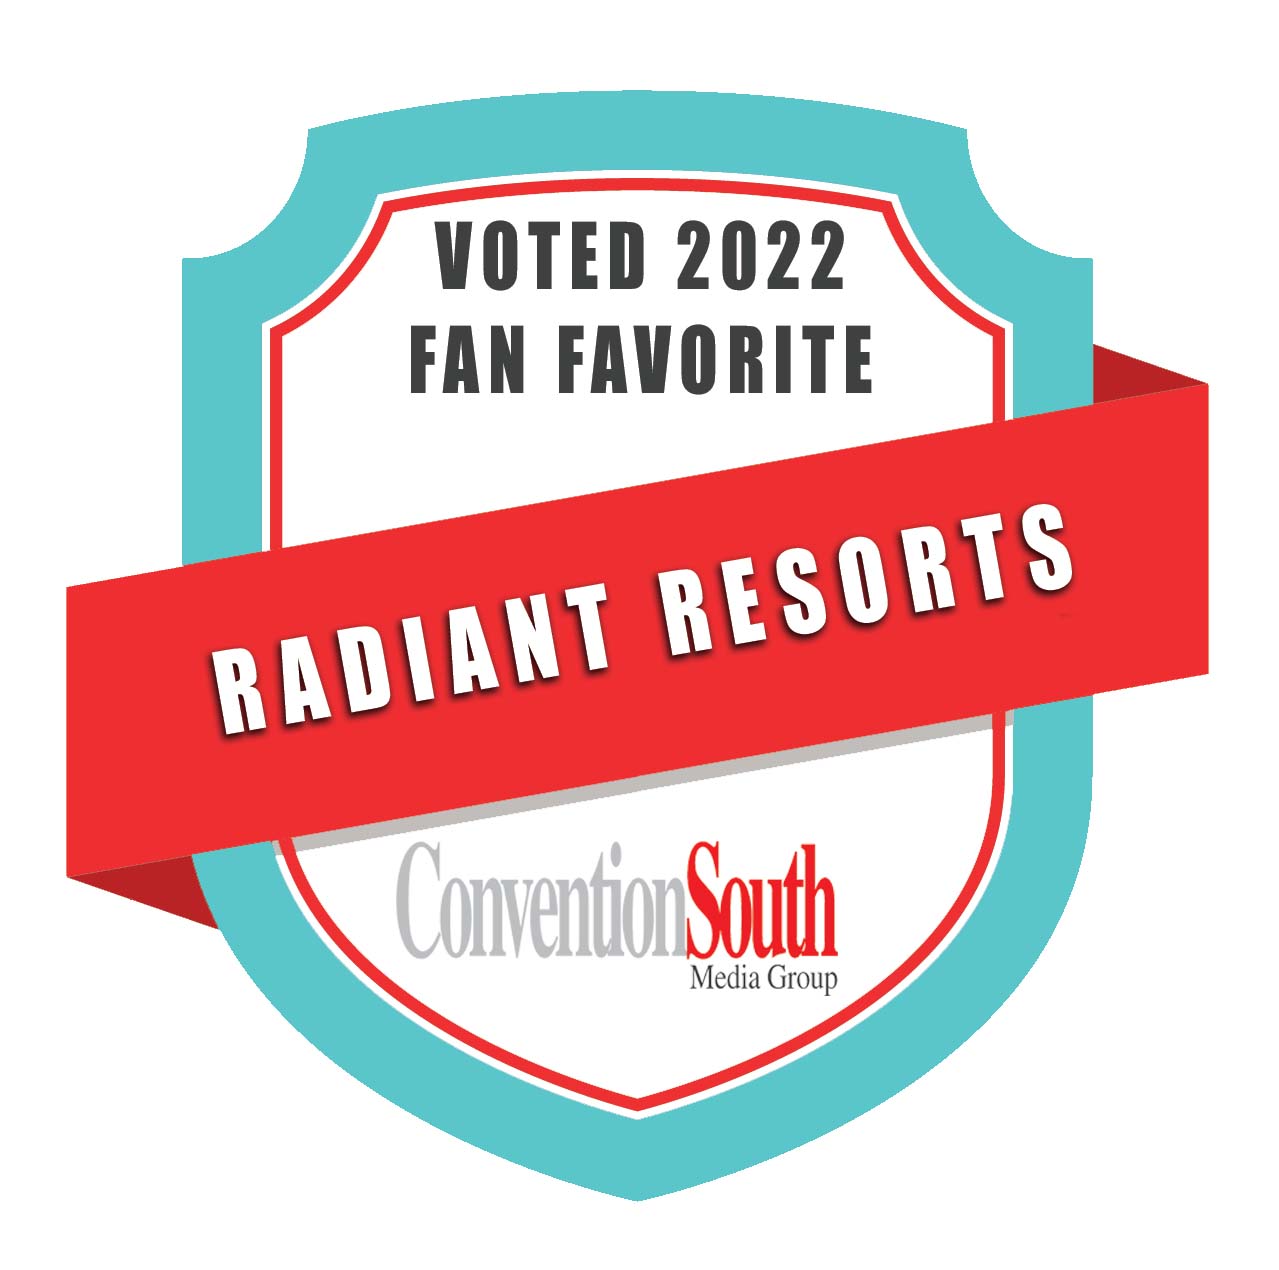 Radiant Resorts Award, 2022 Fan Favorite